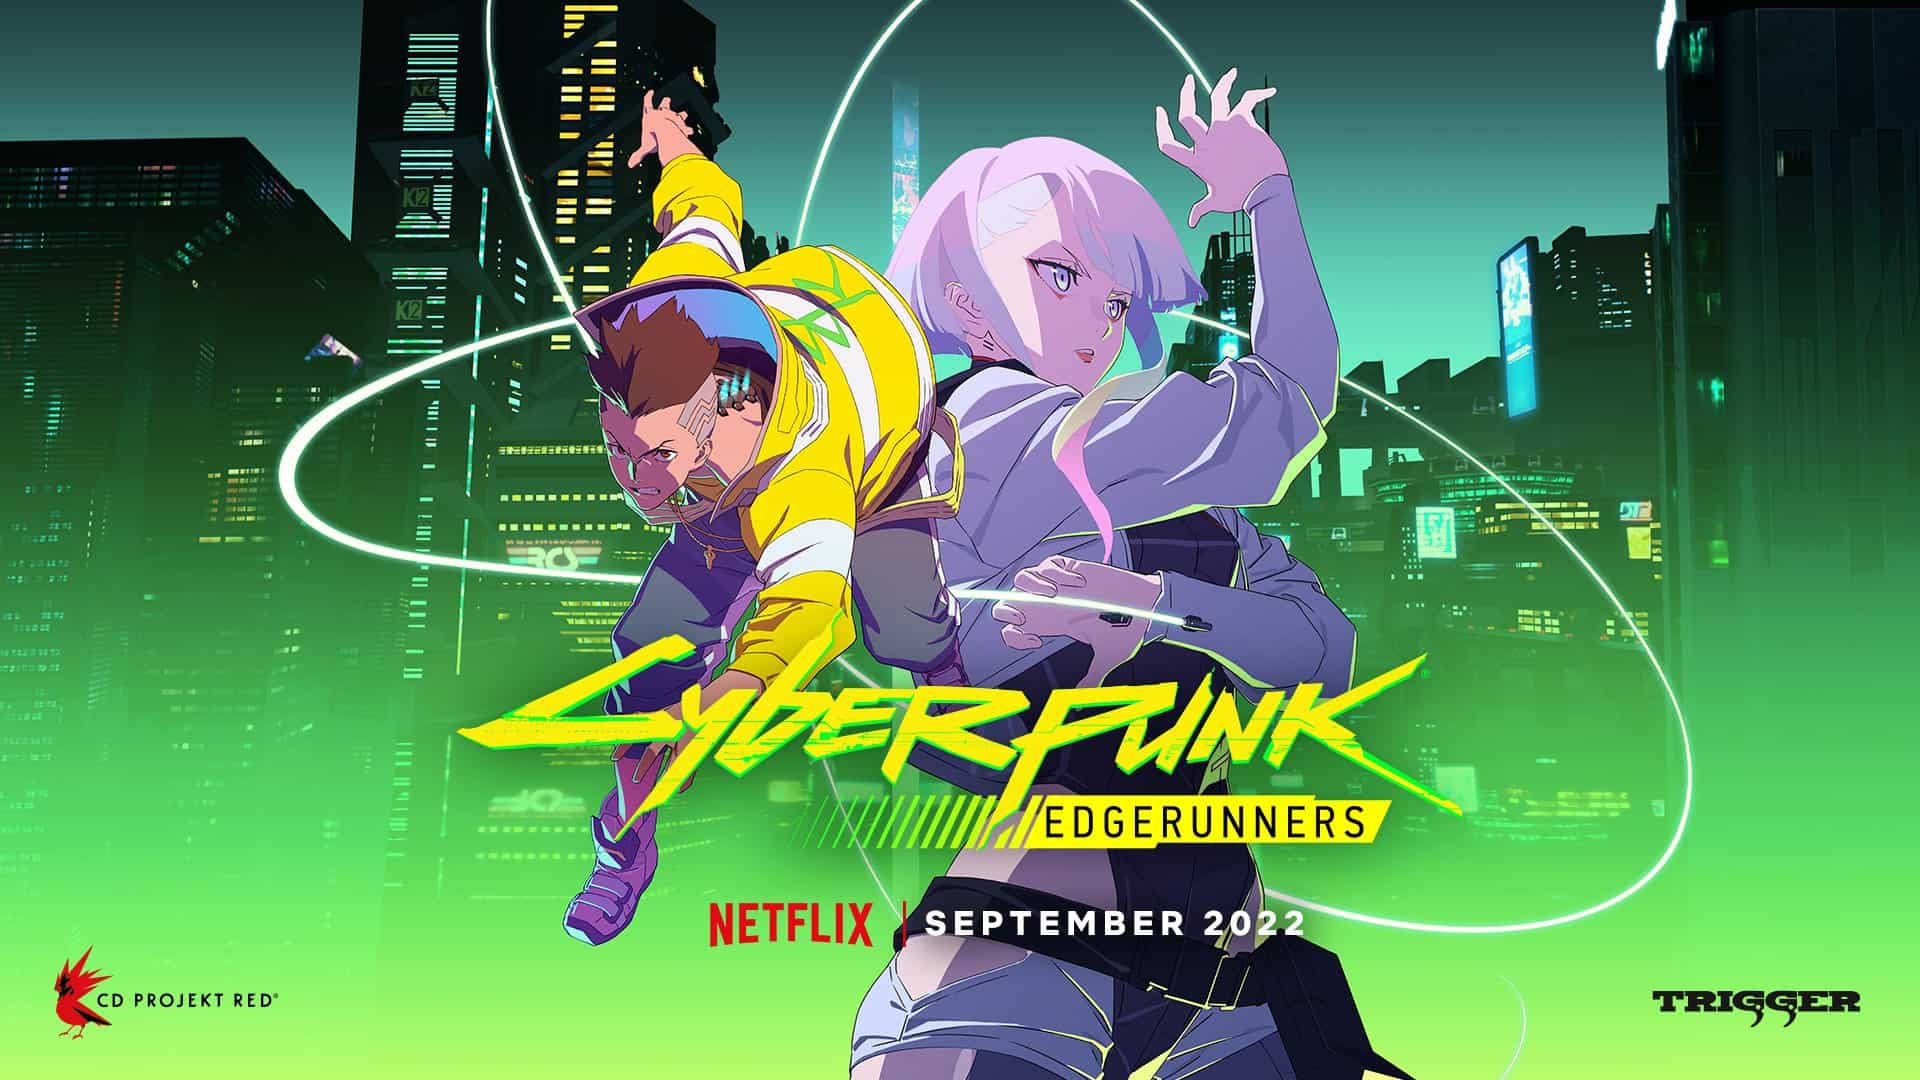 Cyberpunk Edgerunners Netflix anime